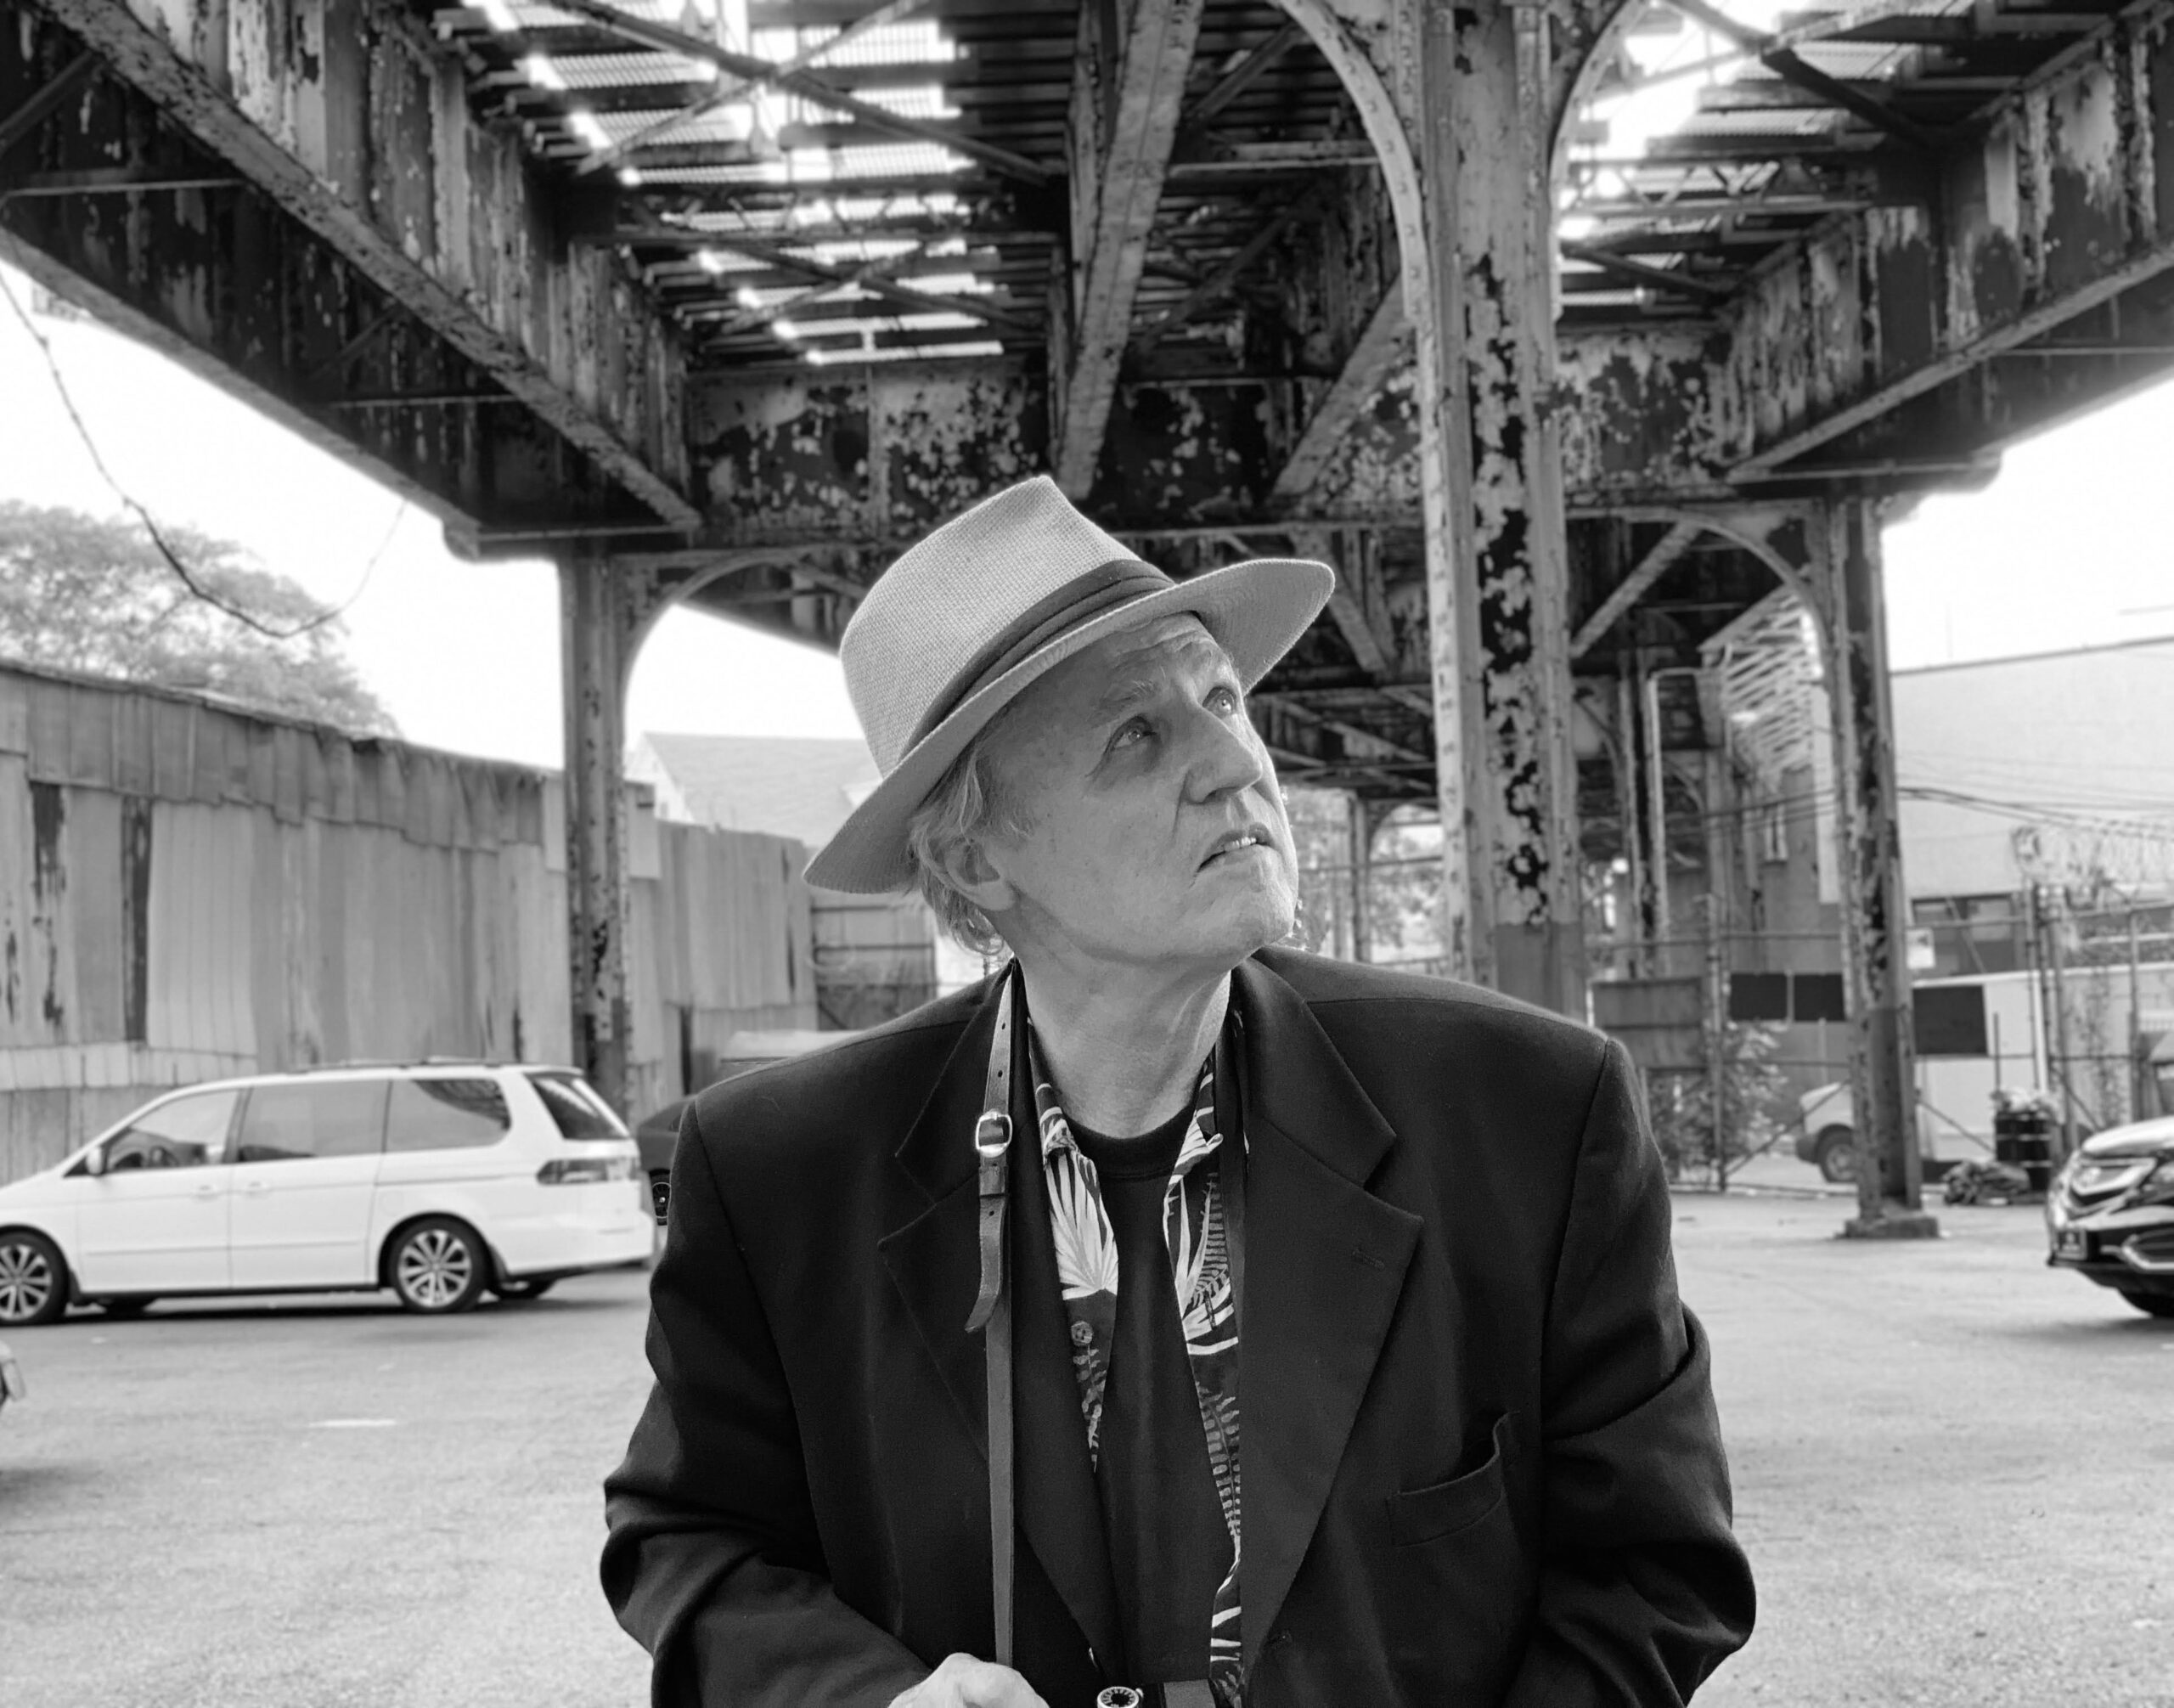 Doug Sitler to introduce Gerard Malanga event at Fotografiska New York